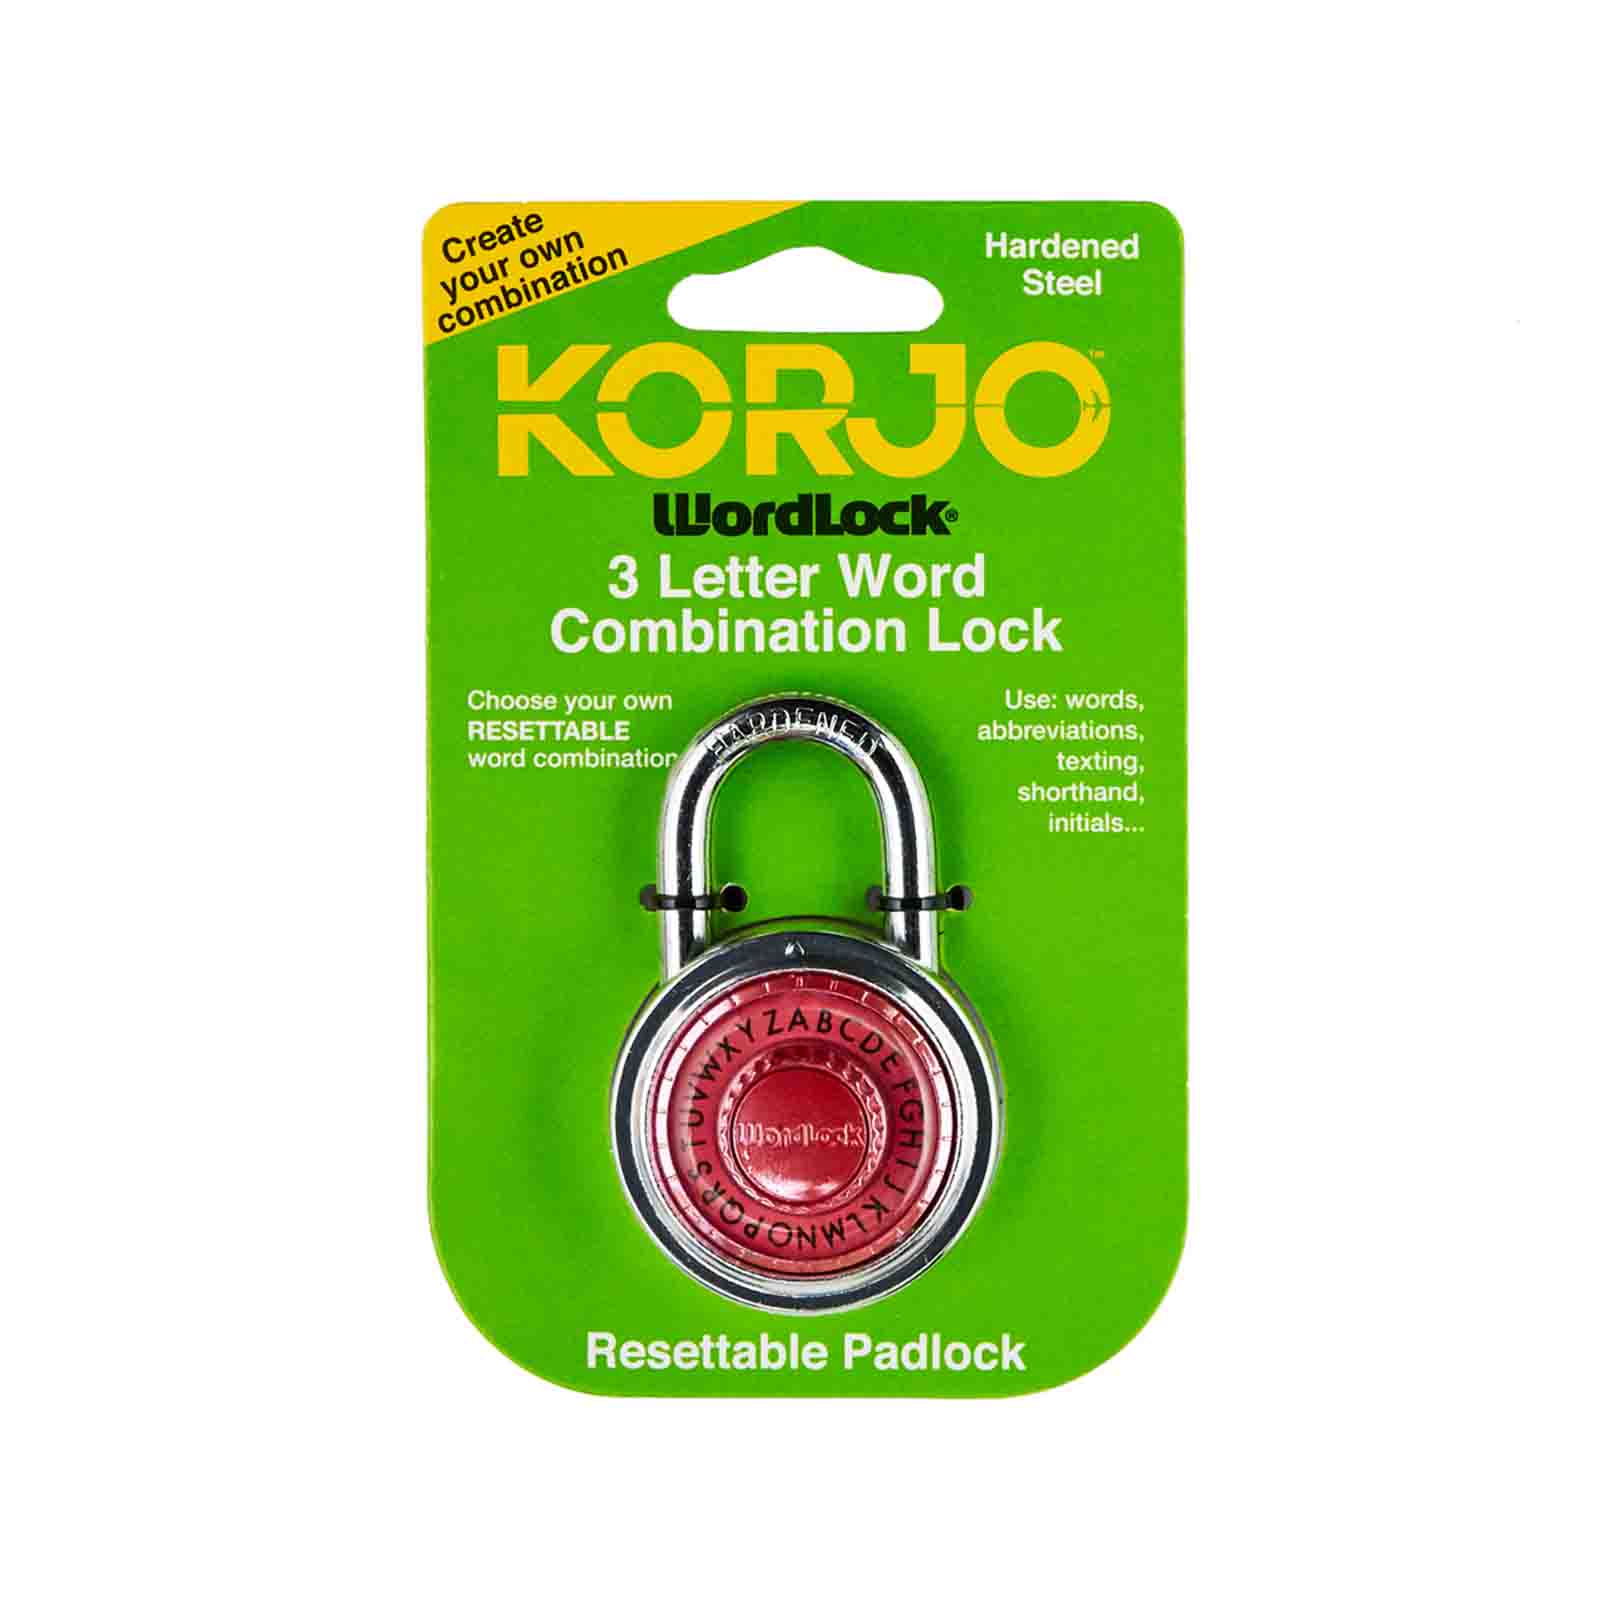 Korjo-Secura-Own-Combination-Word-Lock-Pink-Package